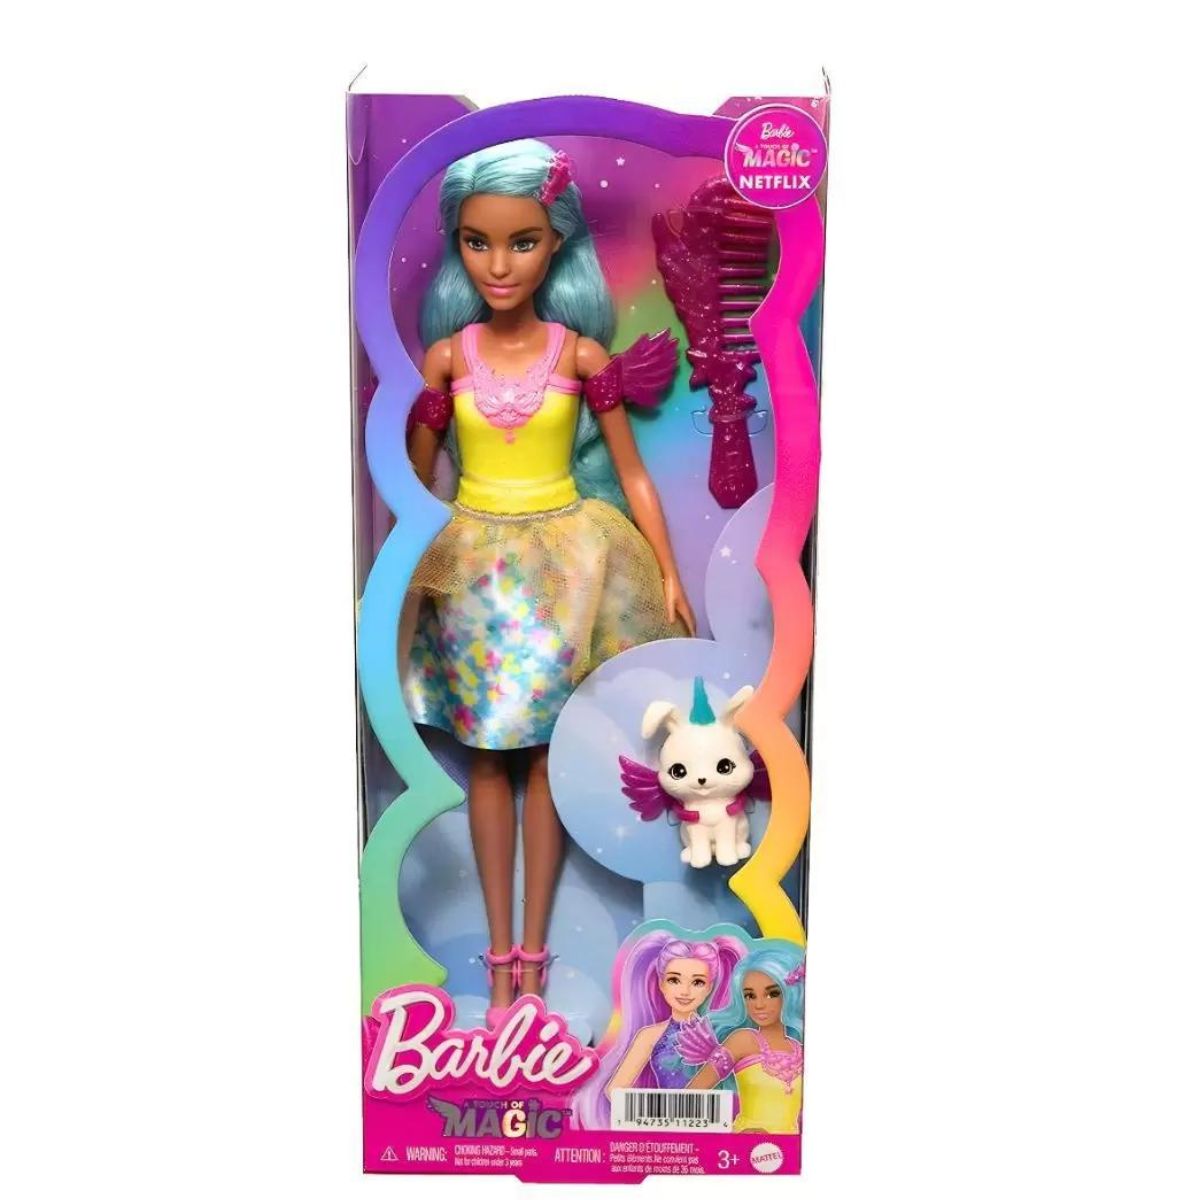 Kit Com 5 Roupinhas Para Bonecas Veste Barbie/frozen